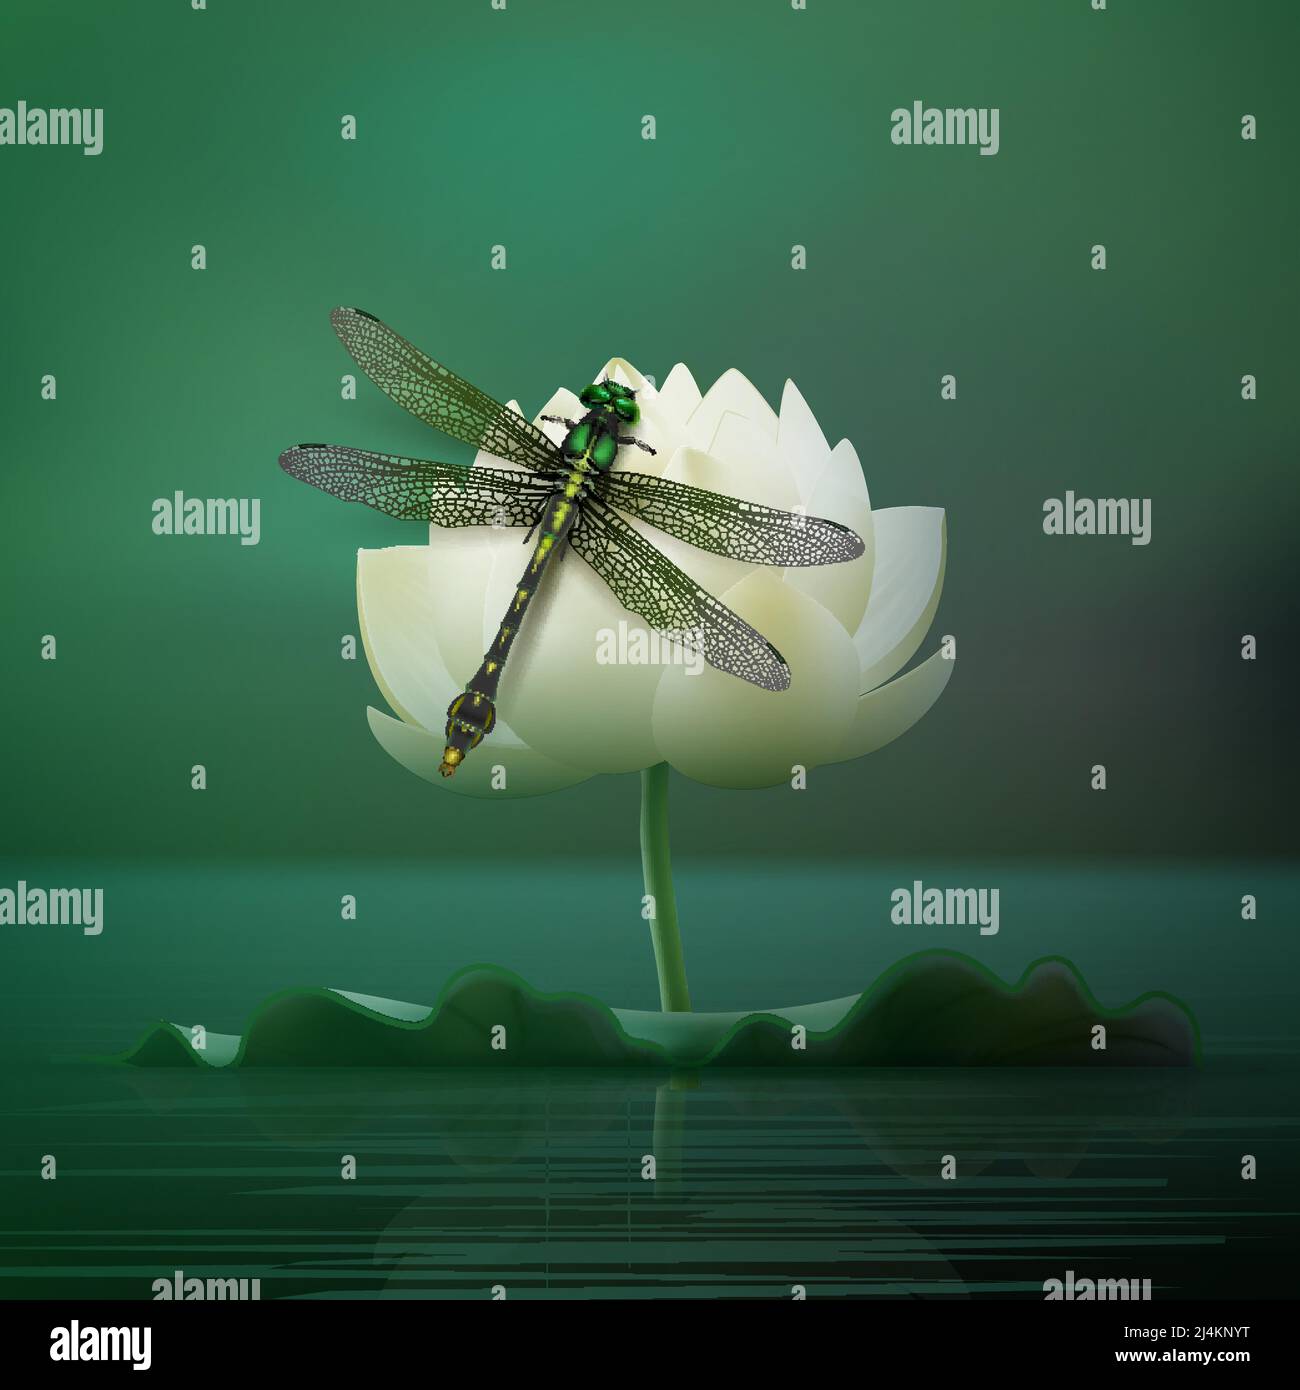 Vektor realistische Gomphus vulgatissimus Libelle sitzt auf Lilie Blume mit Blur dunkeltürkis Teich Hintergrund Vorderansicht Stock Vektor